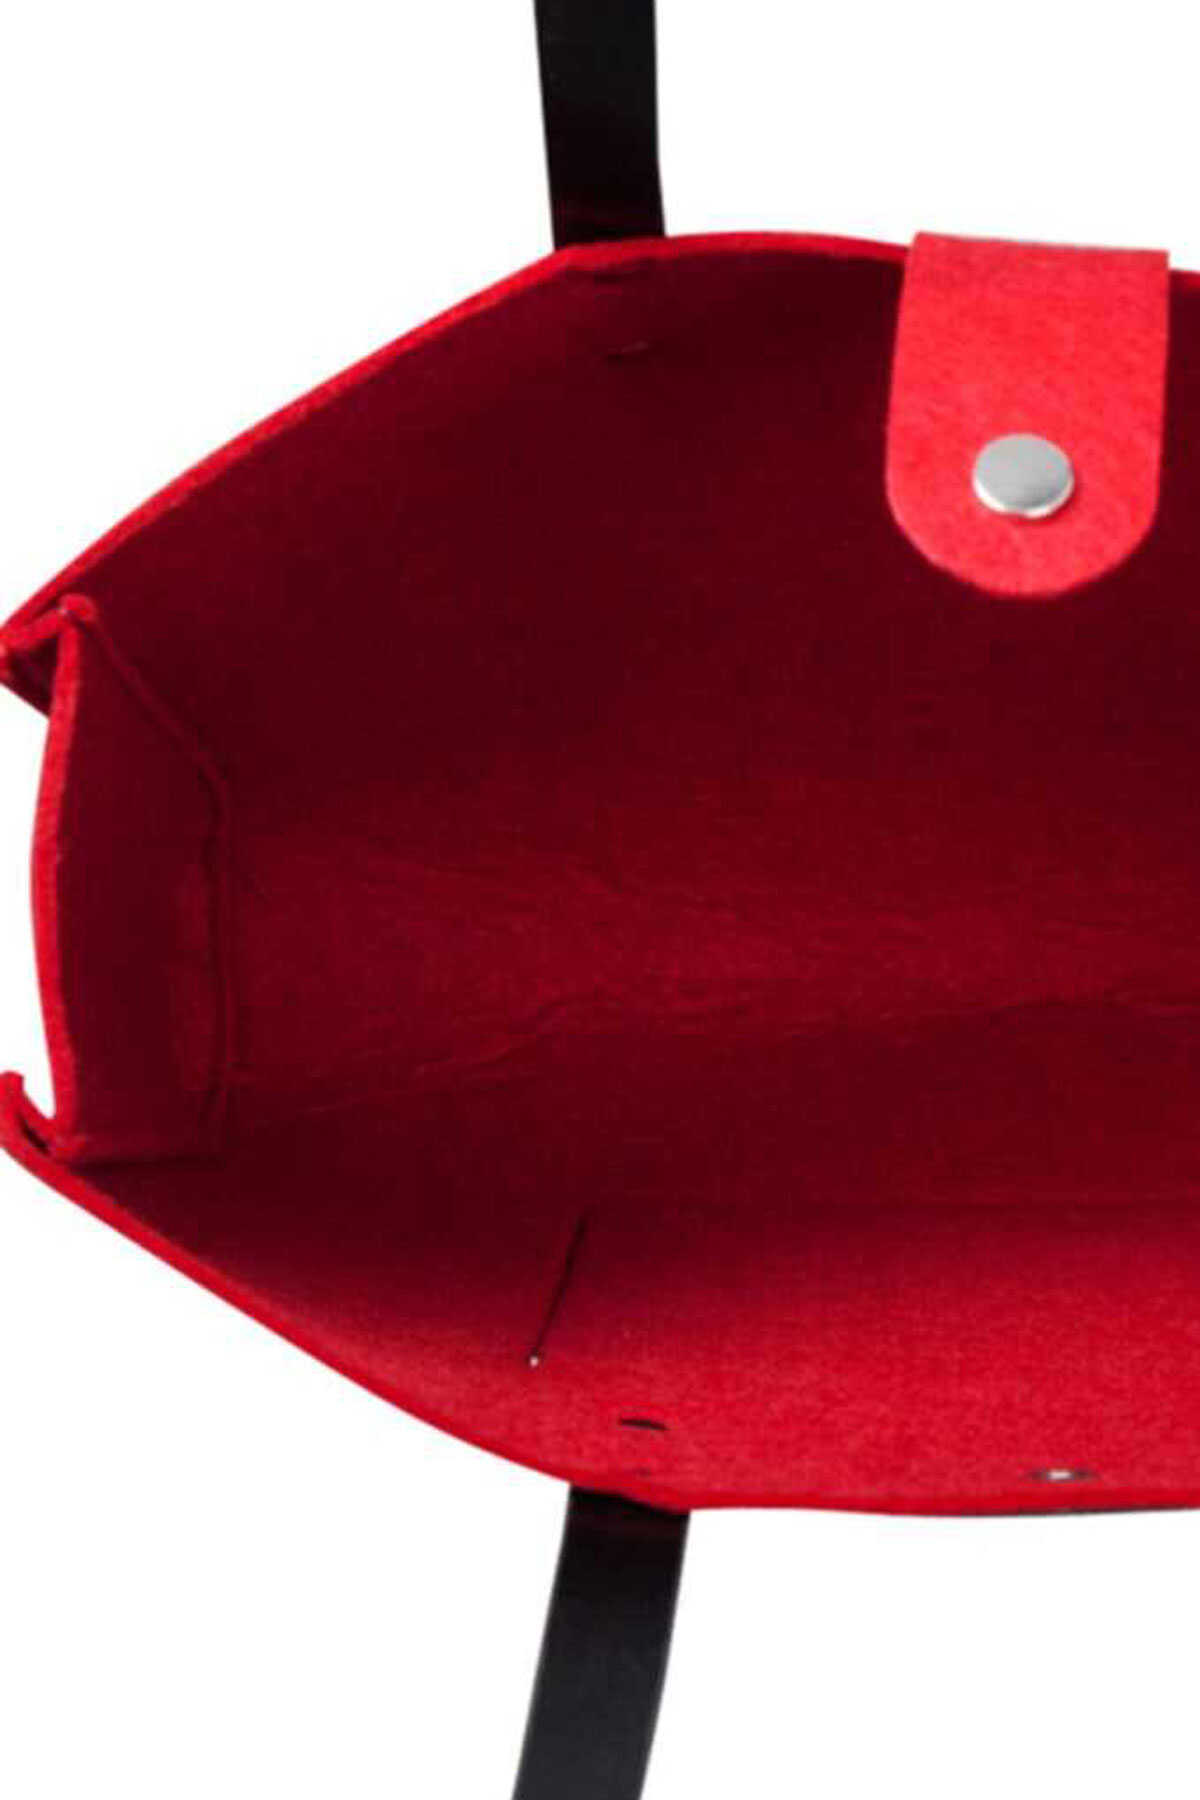 کیف نمدی دوشی طرح دار آویز دار زنانه قرمز برند Biggdesign 